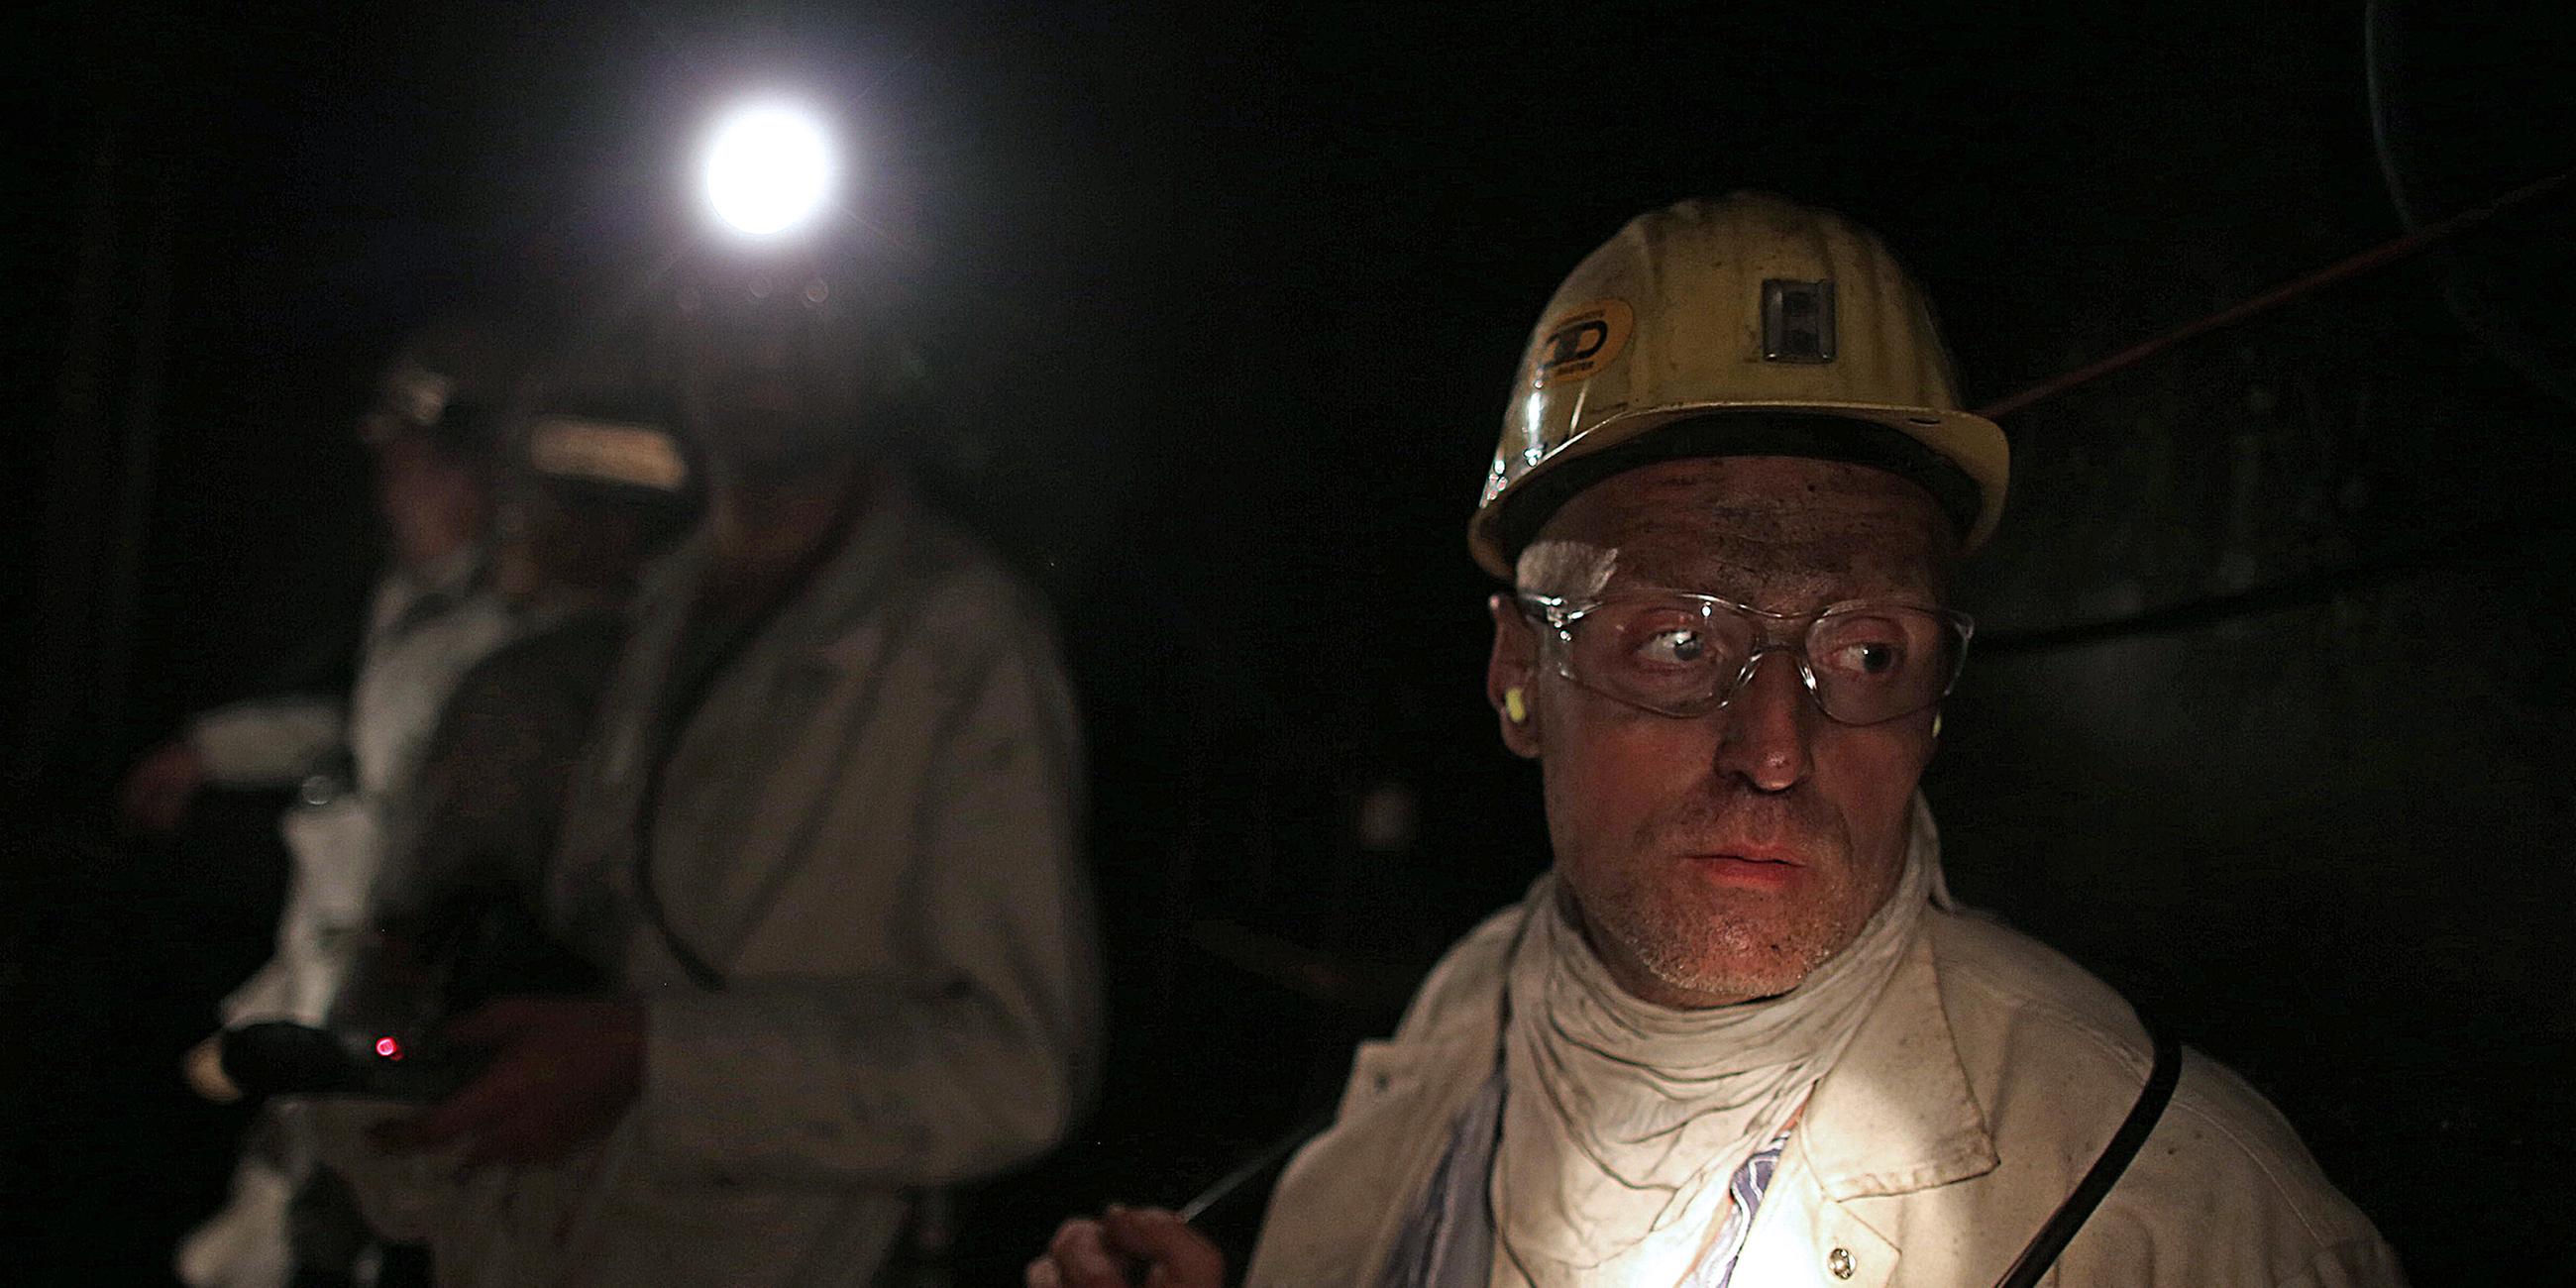 Archiv: Bergleute stehen auf der Zeche Prosper Haniel im Förderkorb